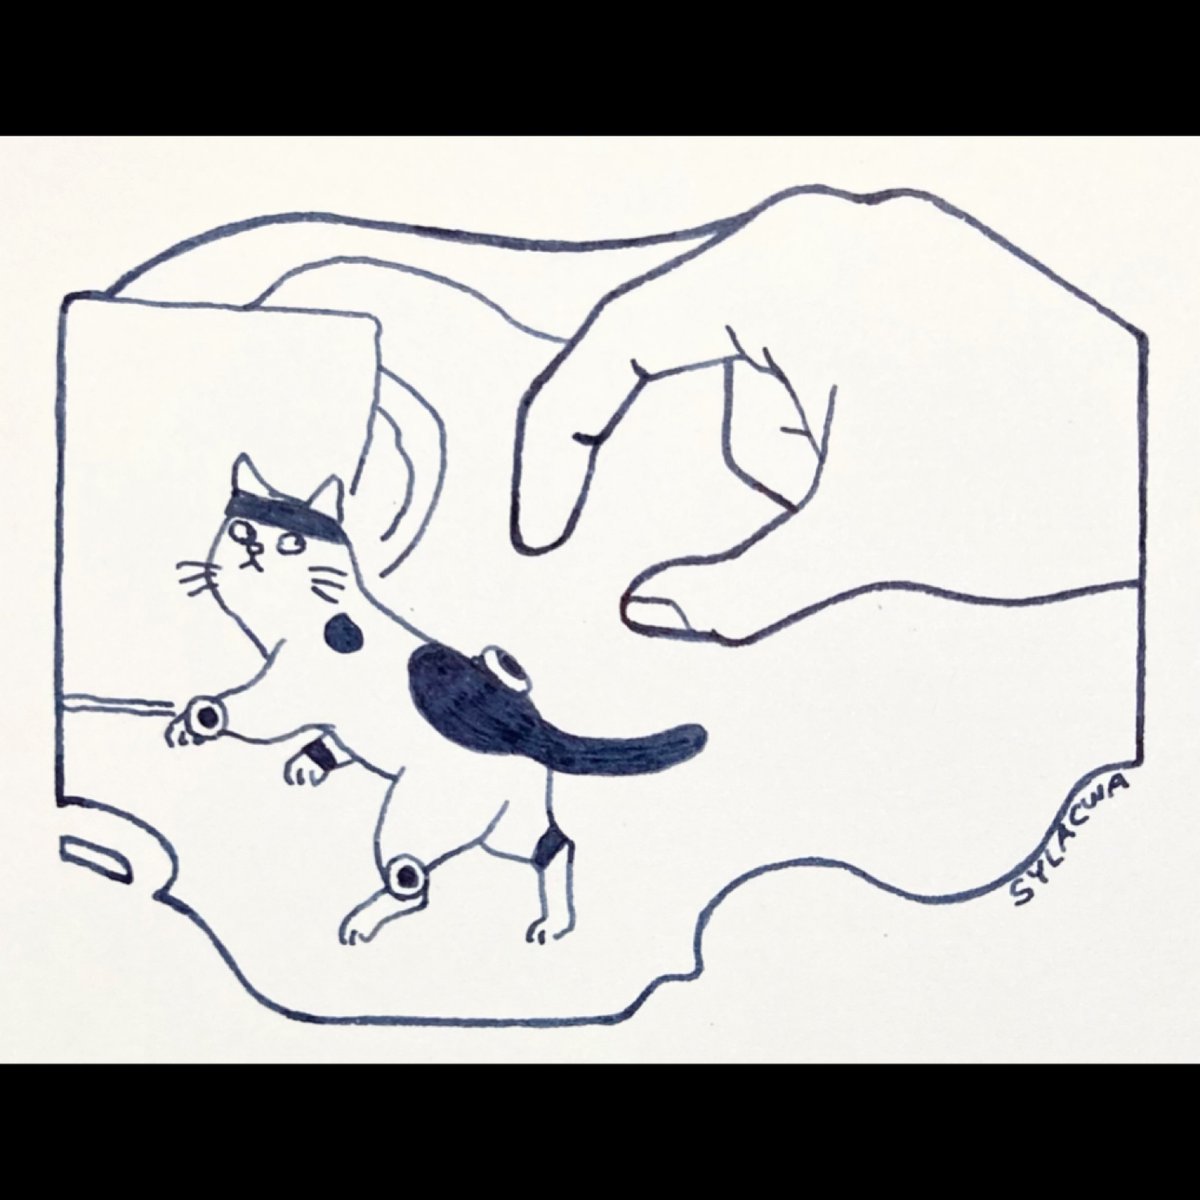 逃げるマカロン #mocopi 猫画  #InkDrawing #ペン画 #絵 #イラスト  4/28-30猫画個展@神田